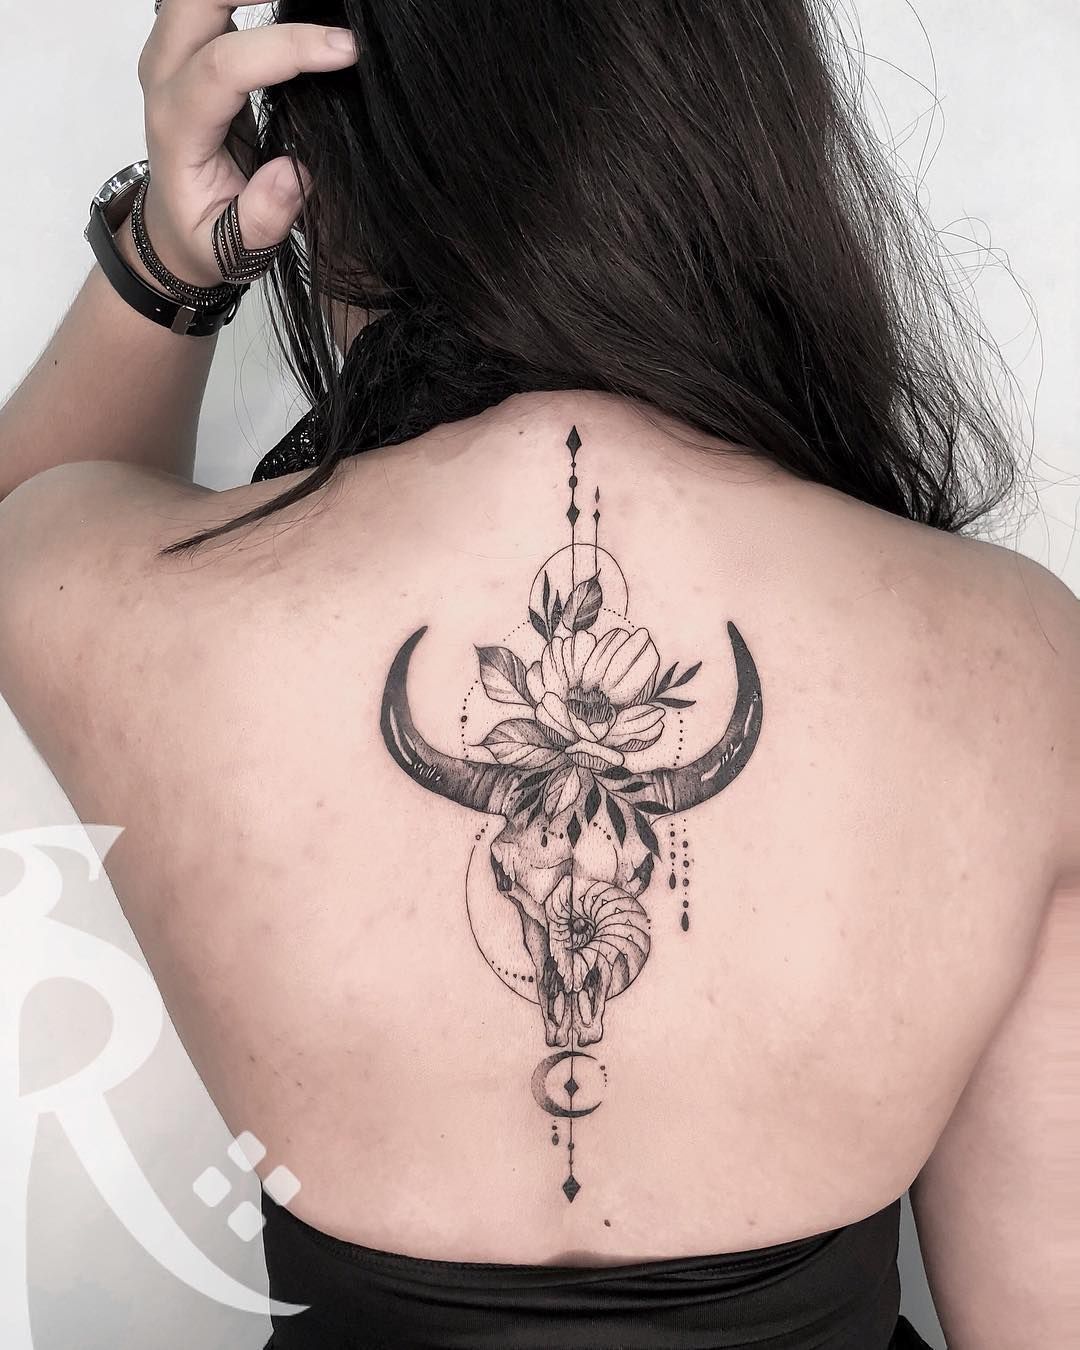  Back Spine Tattoos Bull Inspired